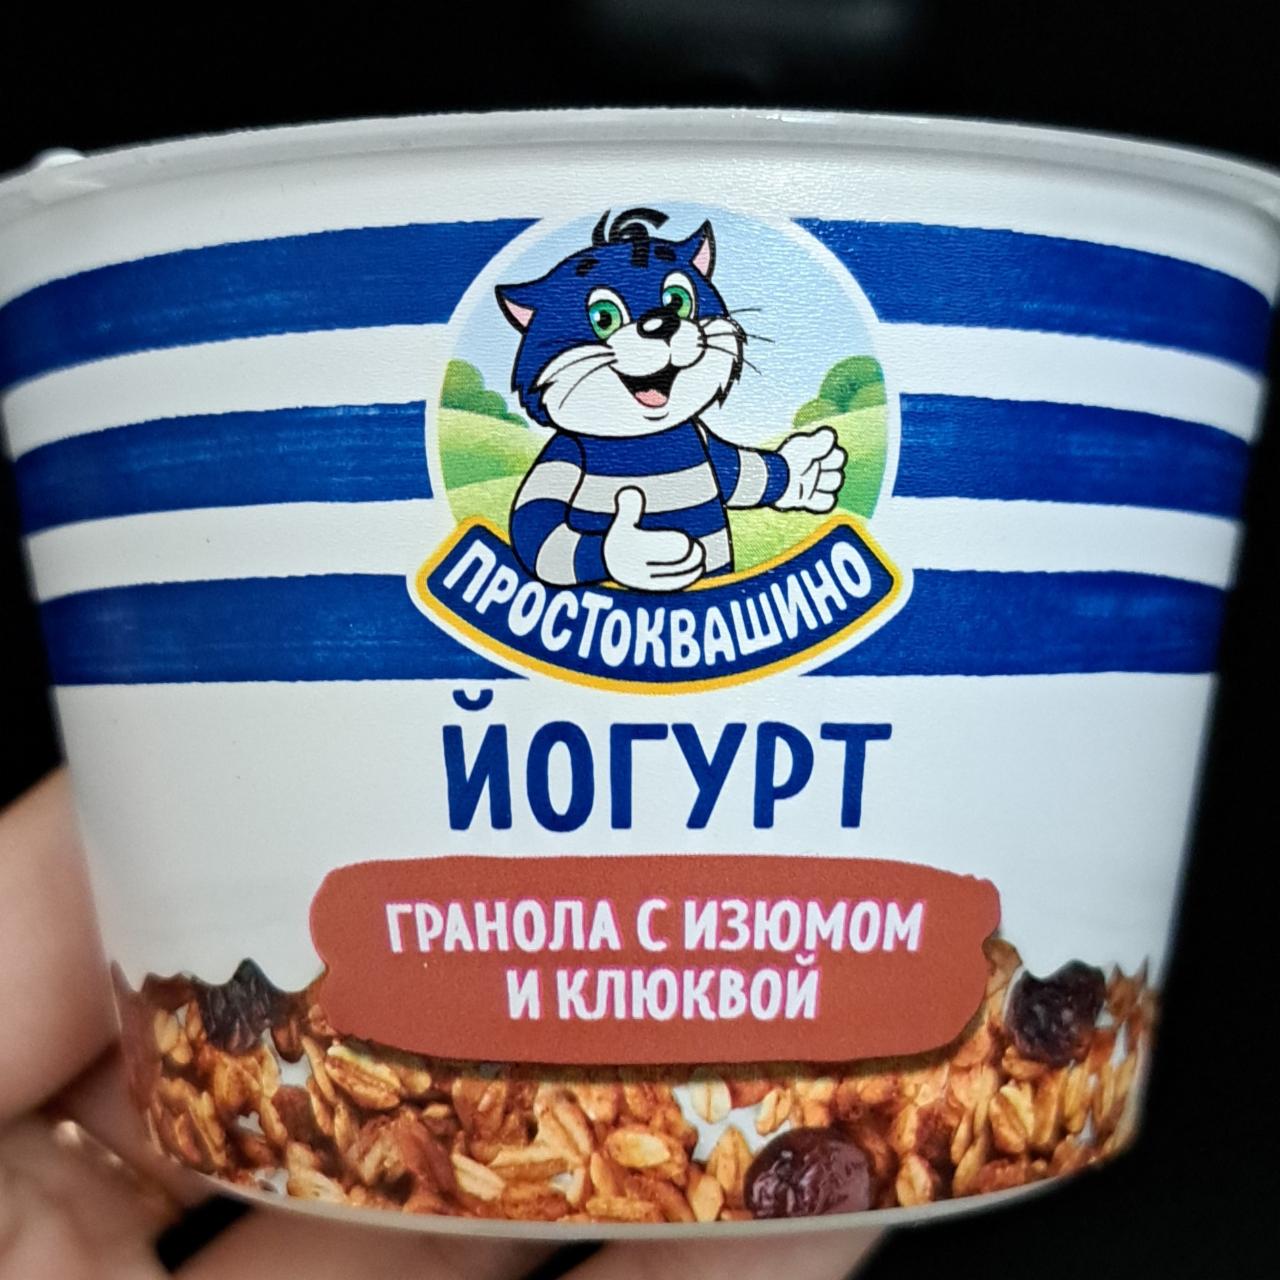 Фото - Йогурт гранола с изюмом и клюквой Простоквашино